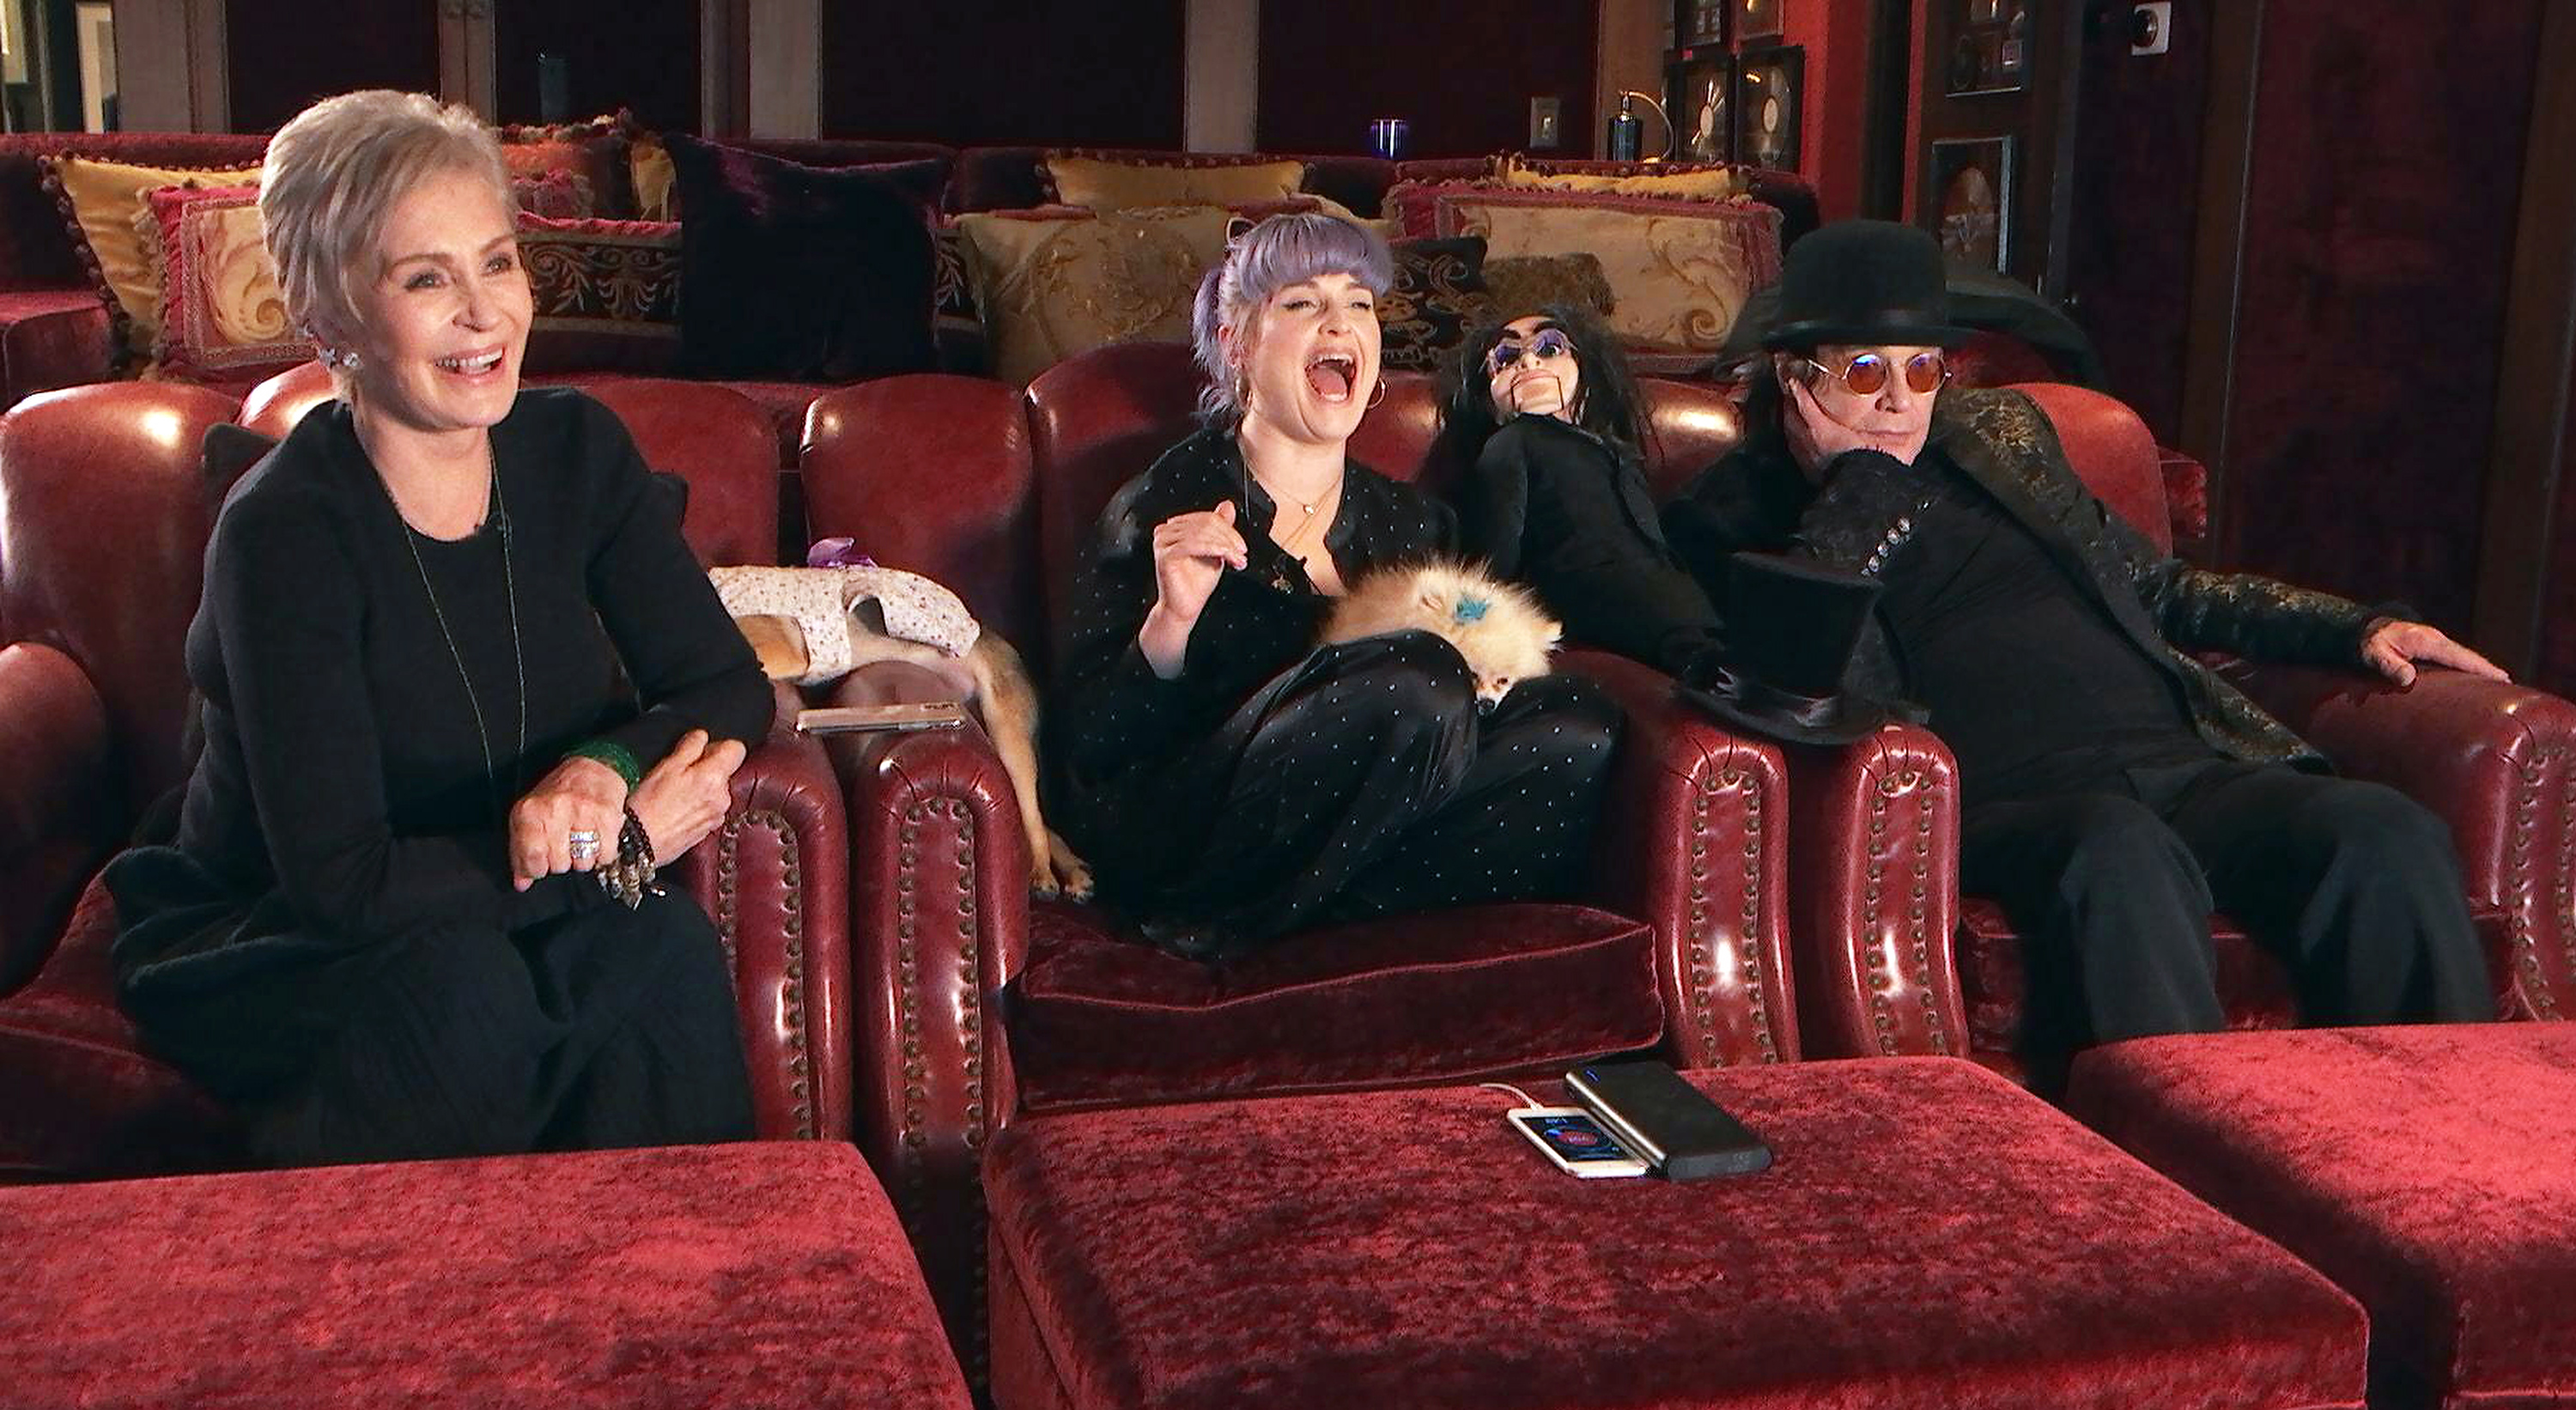 Sharon, Kelly und Ozzy Osbourne in der Serie "Celebrity Watch Party" | Quelle: Getty Images